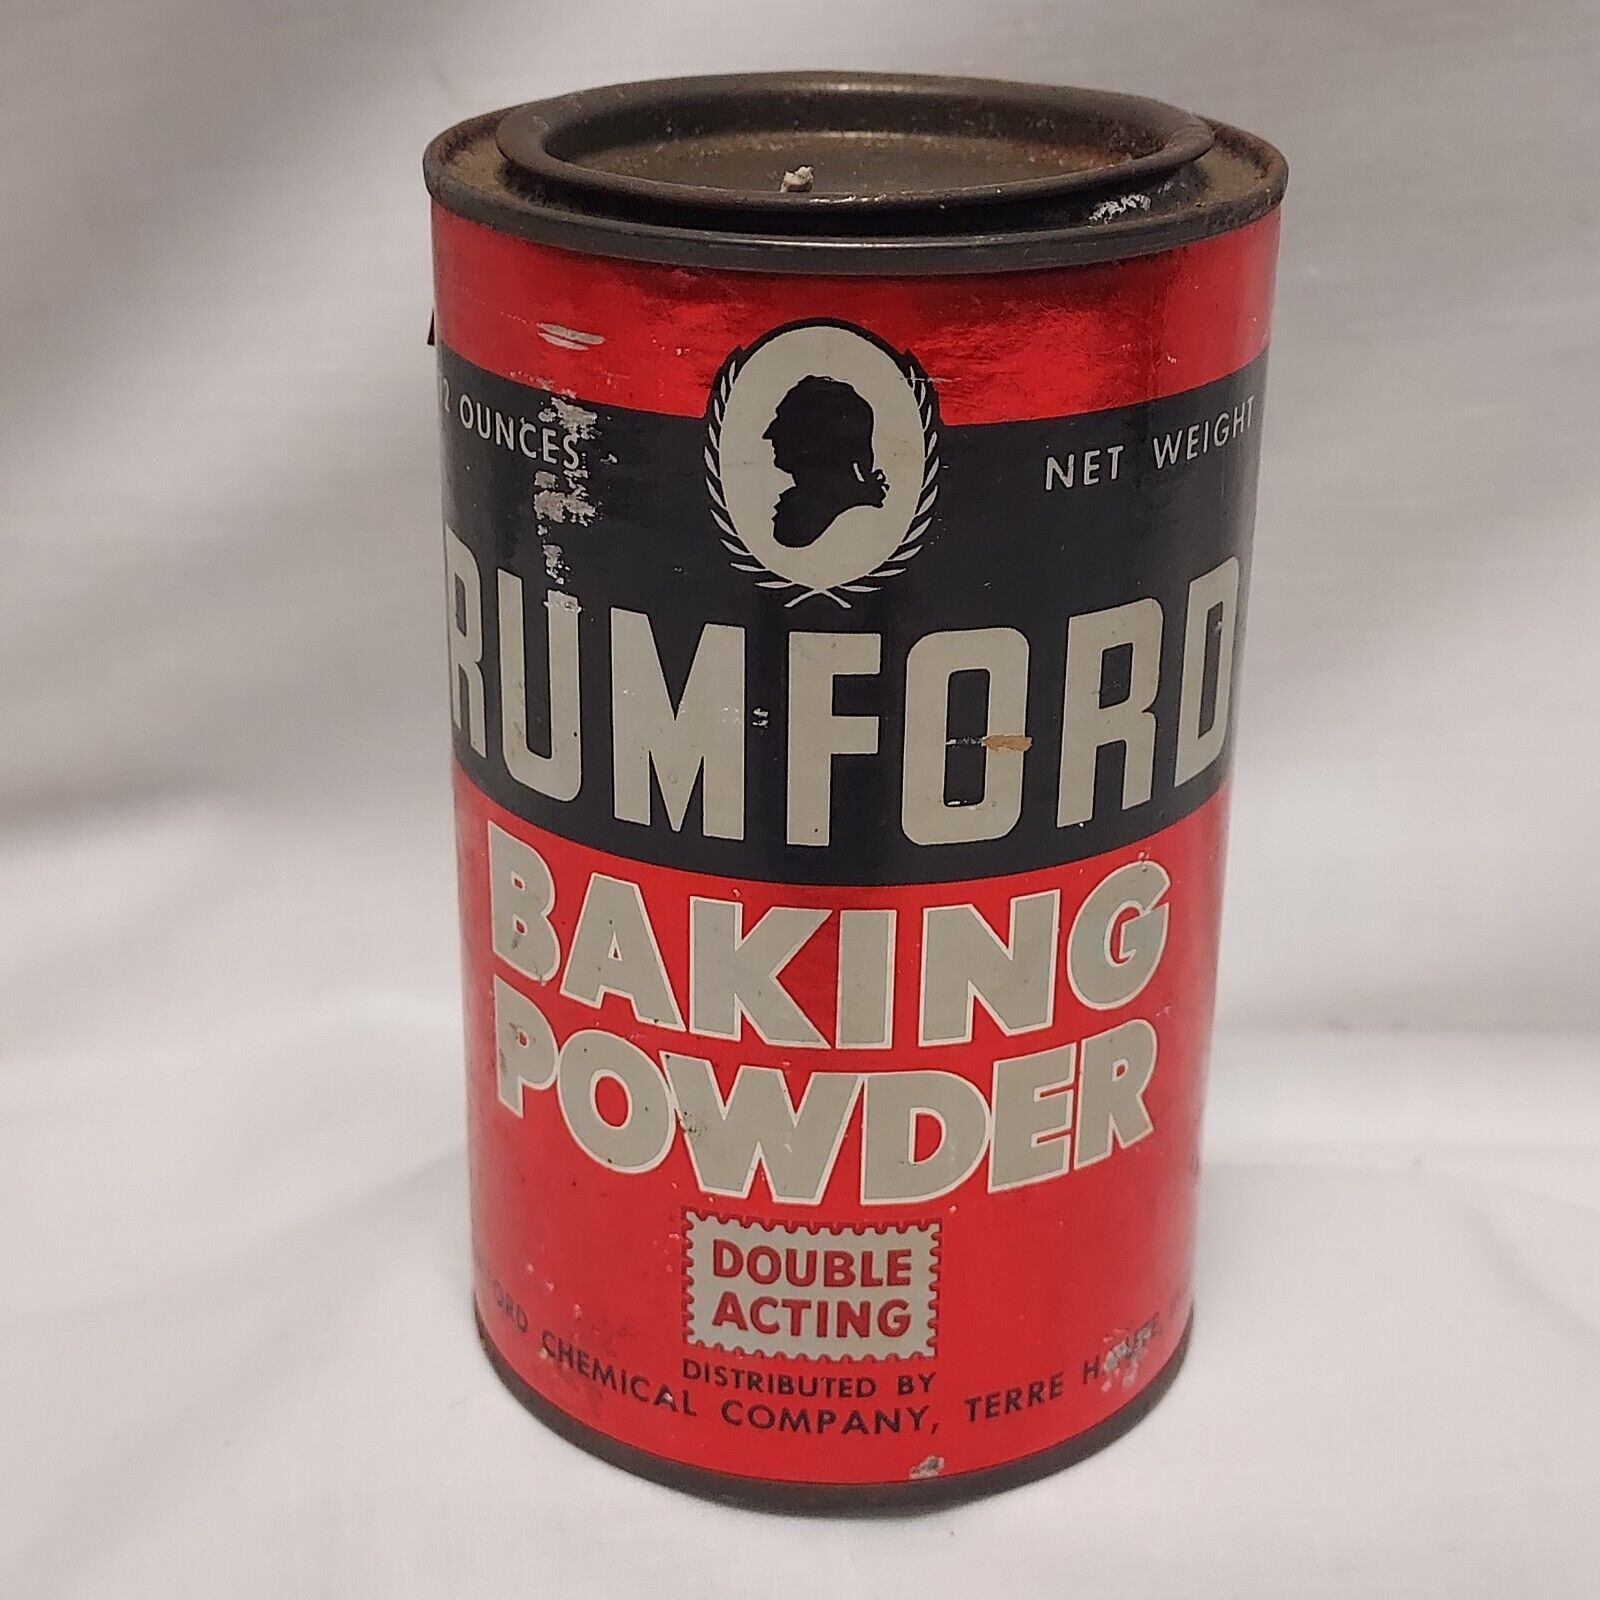 Vintage Rumford Baking Powder Tin 12 Oz Empty